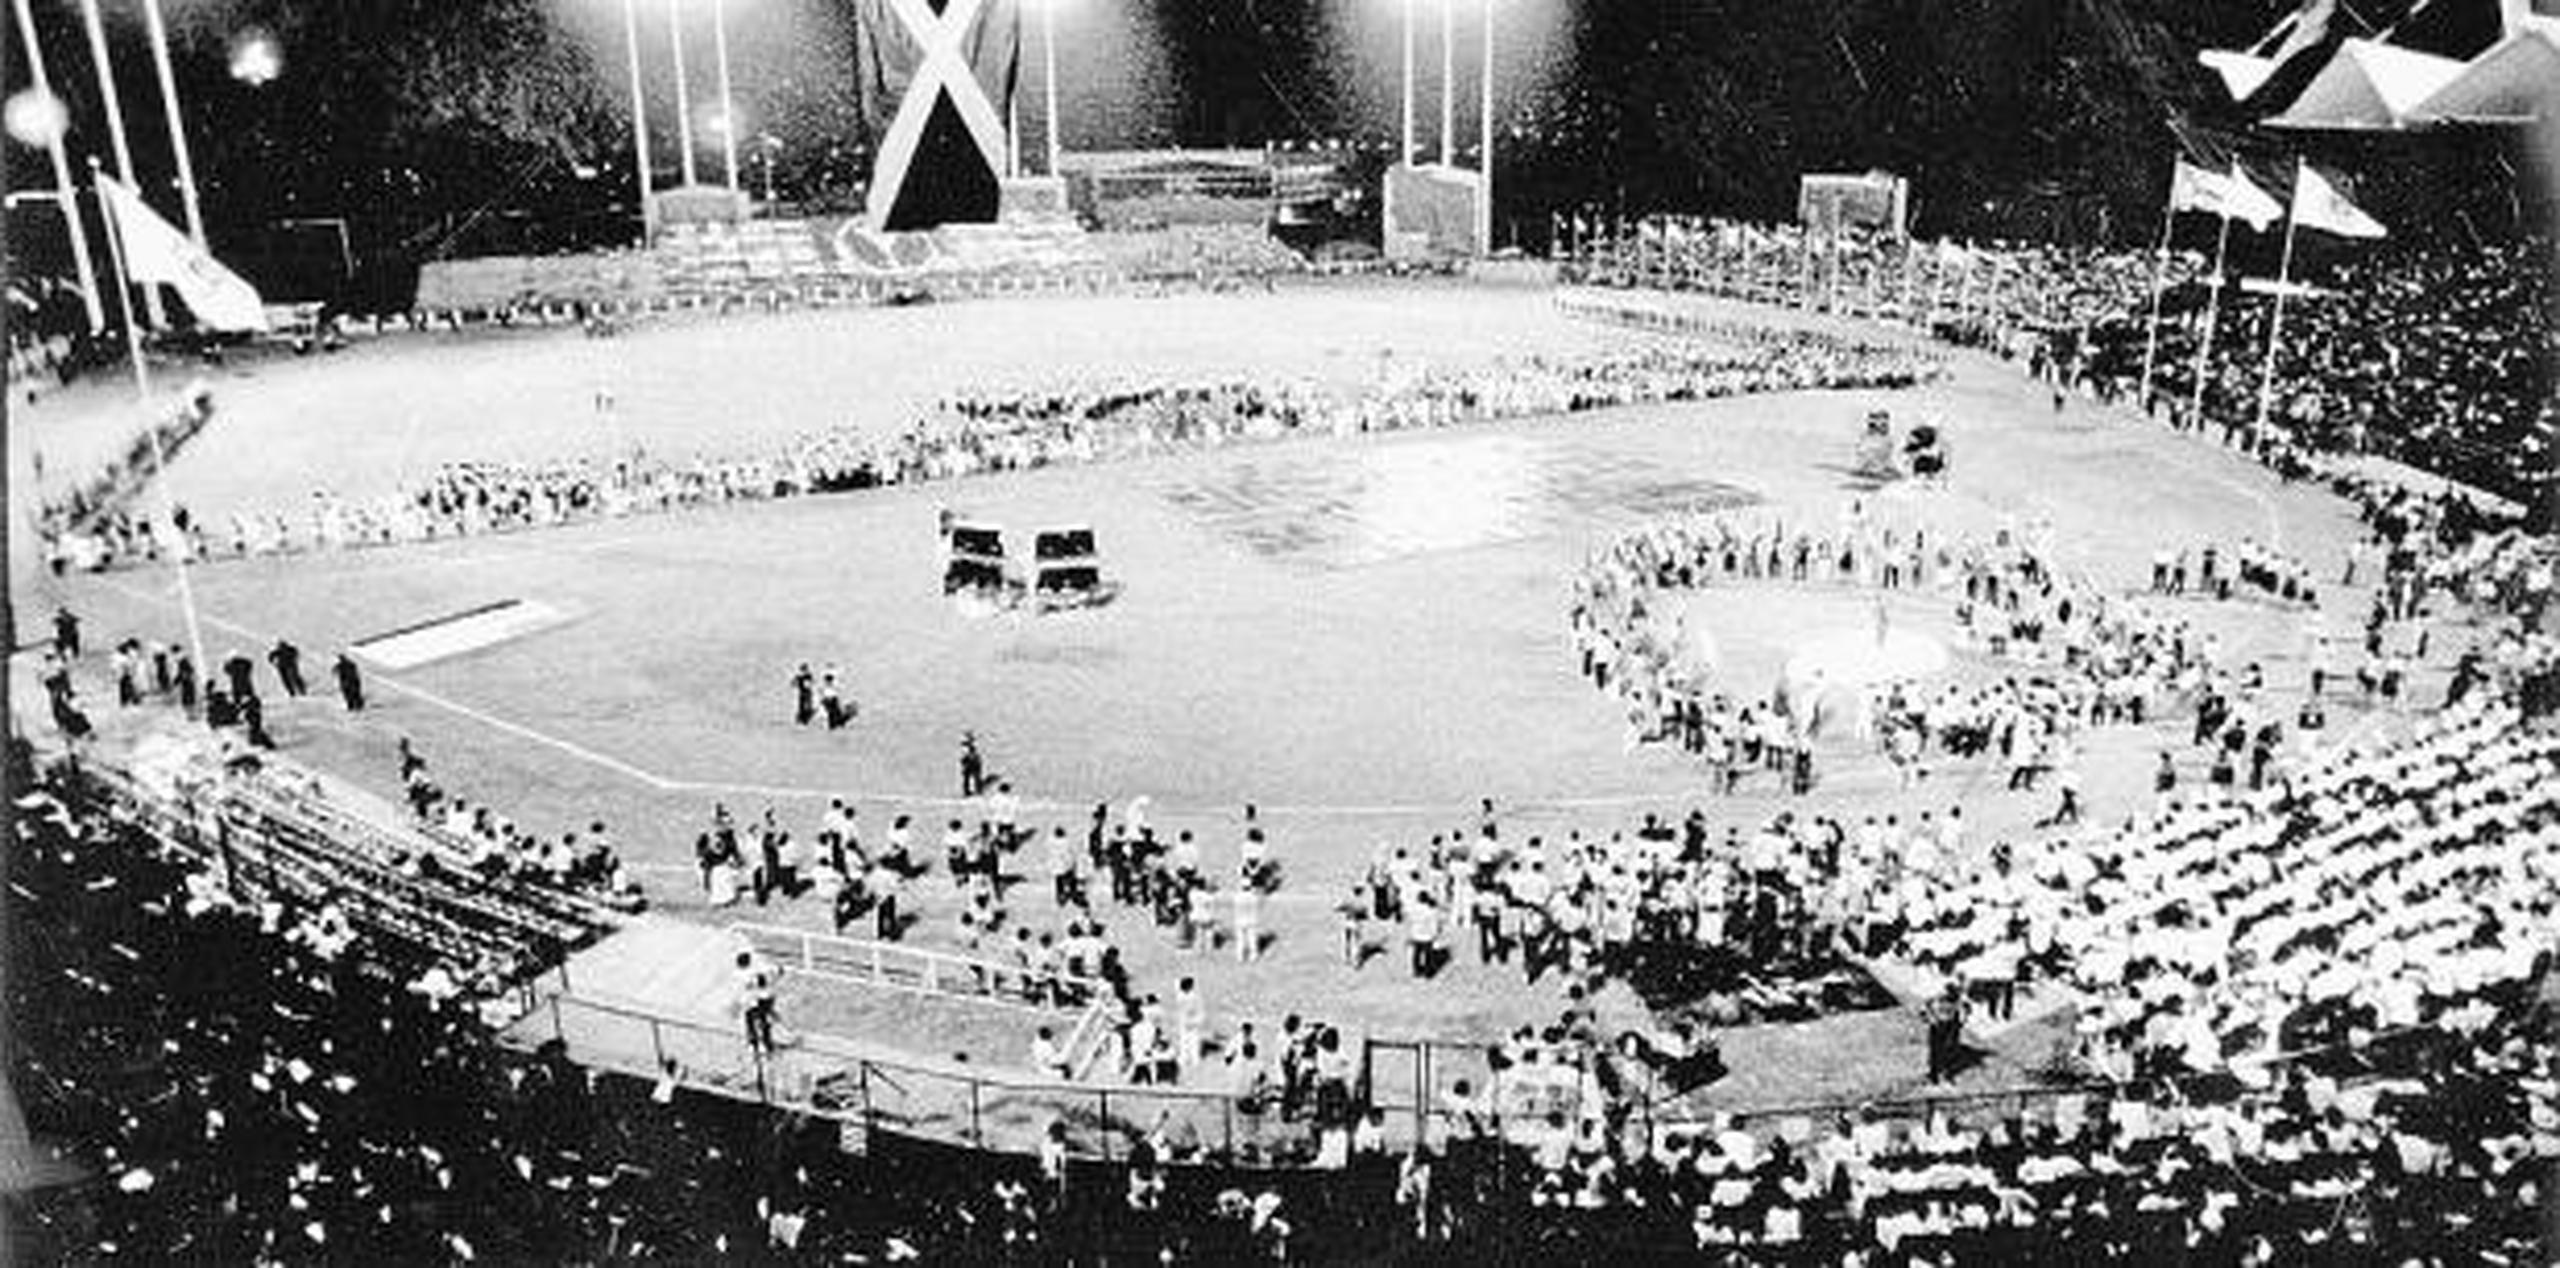 La experiencia de los Panamericanos de San Juan 79 convenció a los puertorriqueños de su capacidad de organizar eventos regionales, caribeños, regionales e internacionales.  (Archivo)